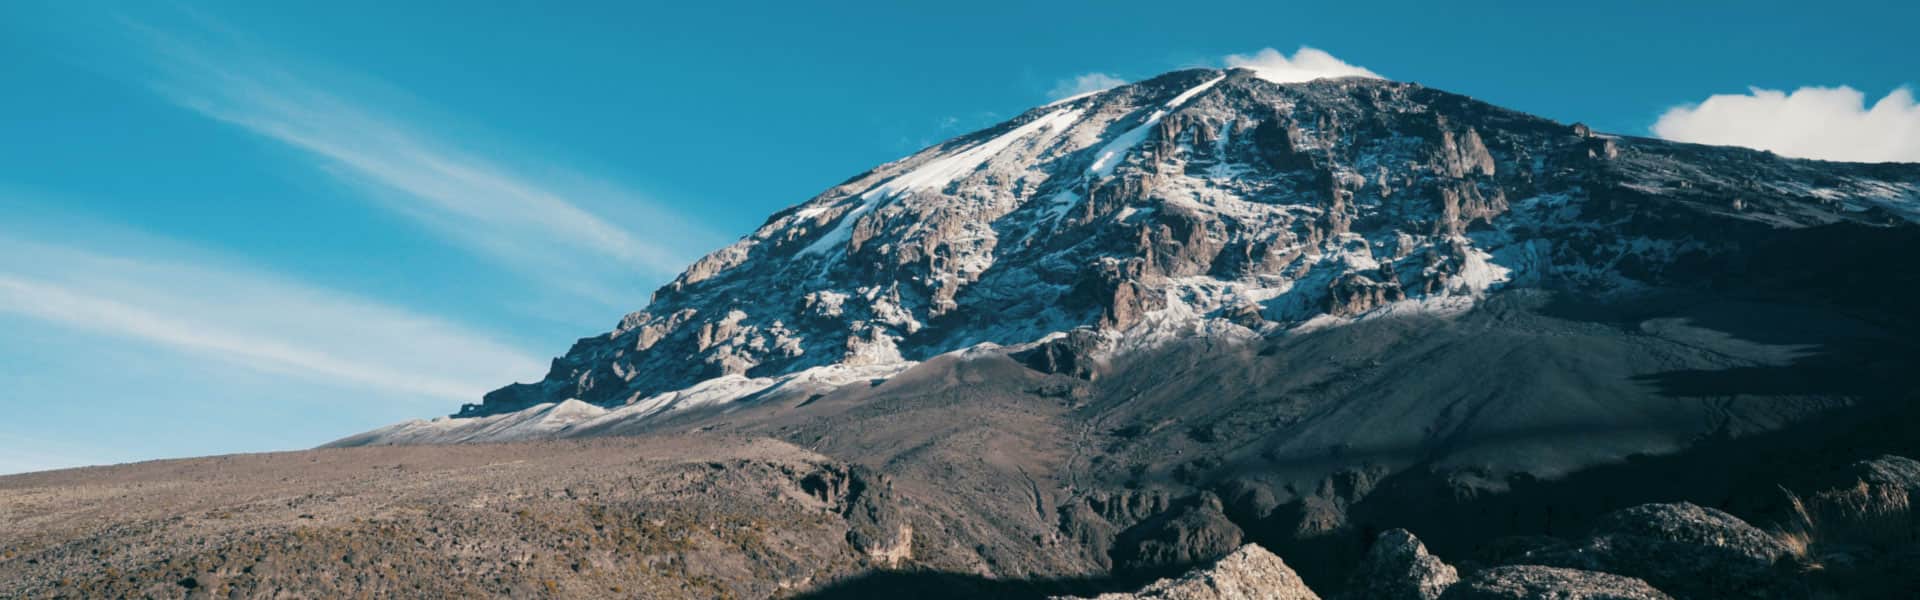 Kilimanjaro Lemosho Route 7 Days - Mauly Tours